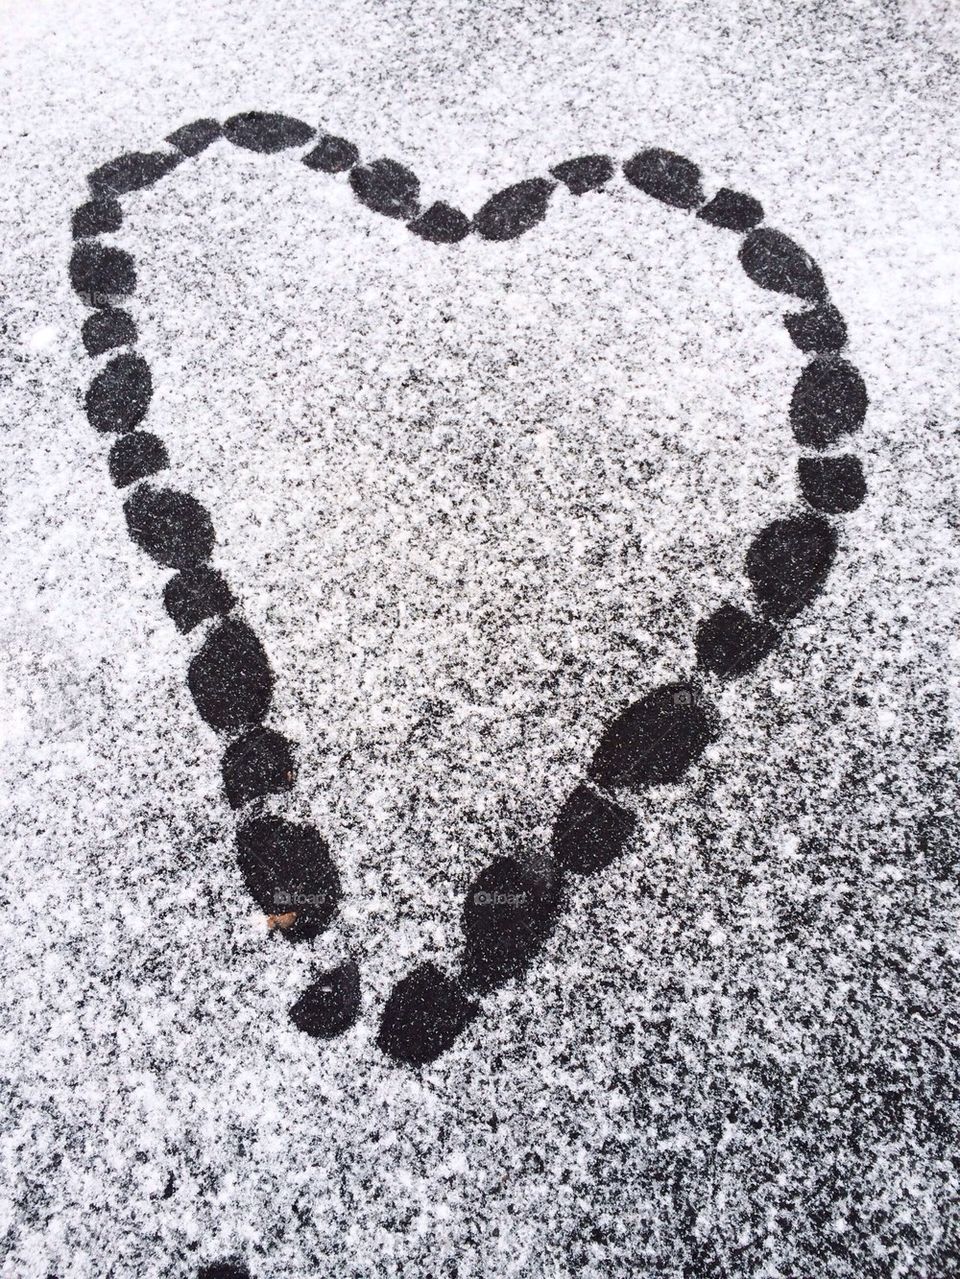 Snowy heart